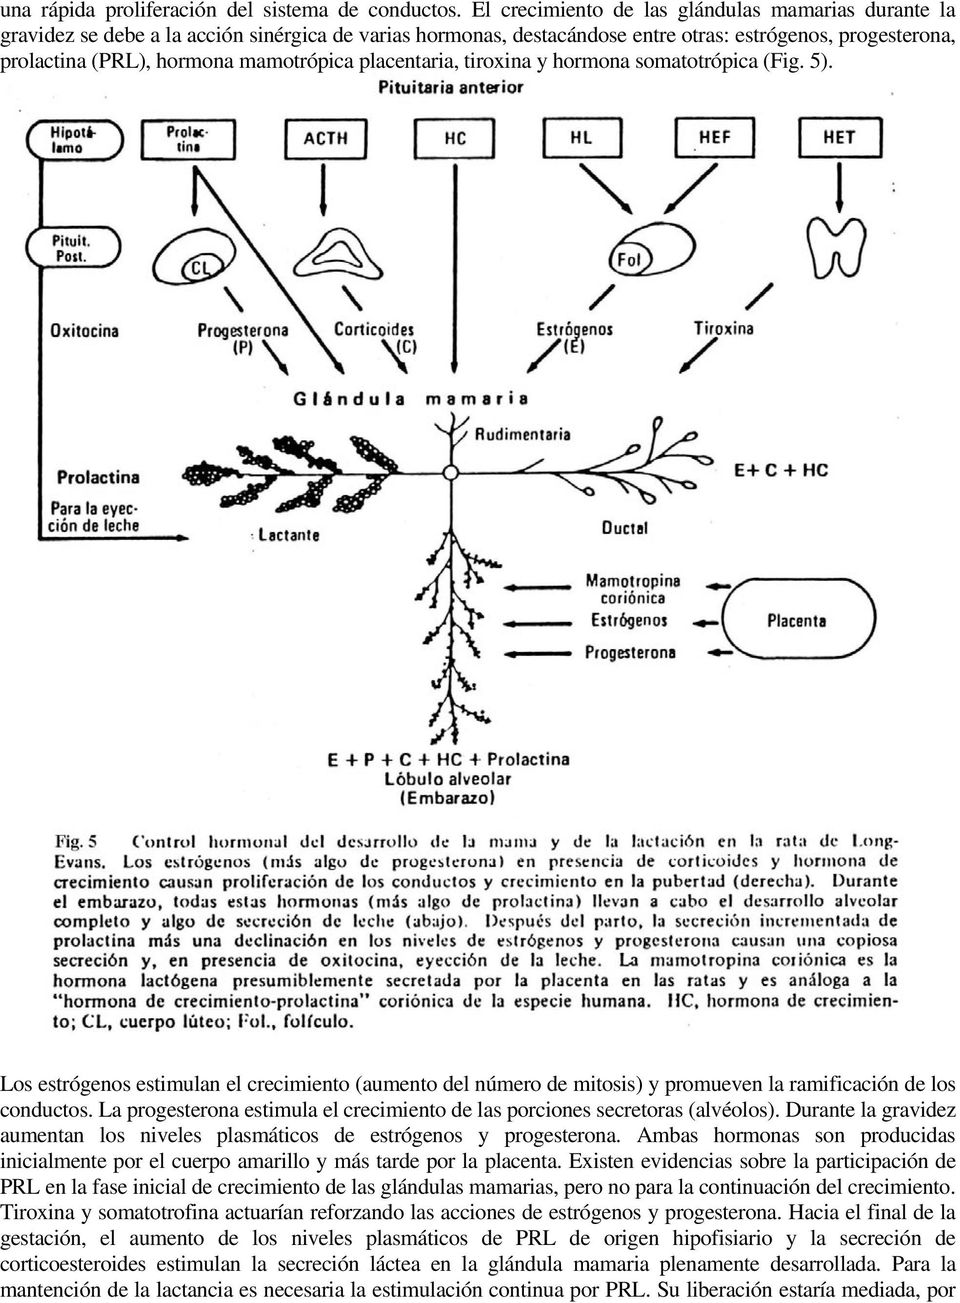 mamotrópica placentaria, tiroxina y hormona somatotrópica (Fig. 5). Los estrógenos estimulan el crecimiento (aumento del número de mitosis) y promueven la ramificación de los conductos.